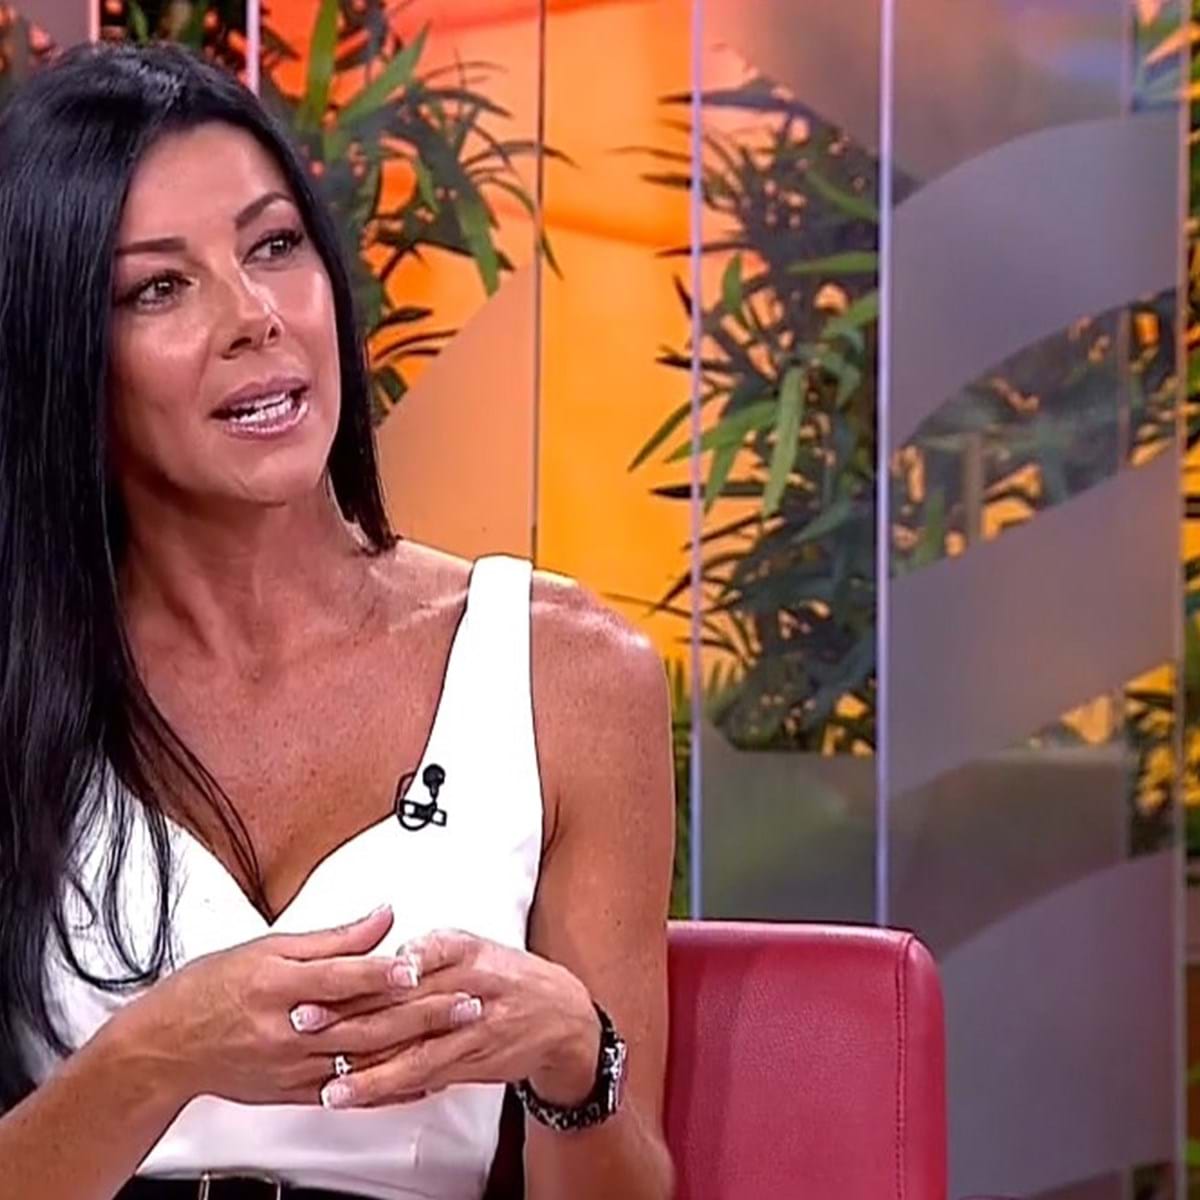 Rainbow Portugal acelera com ex-mulher de milionário envolvido em escândalo sexual - Comércio imagem